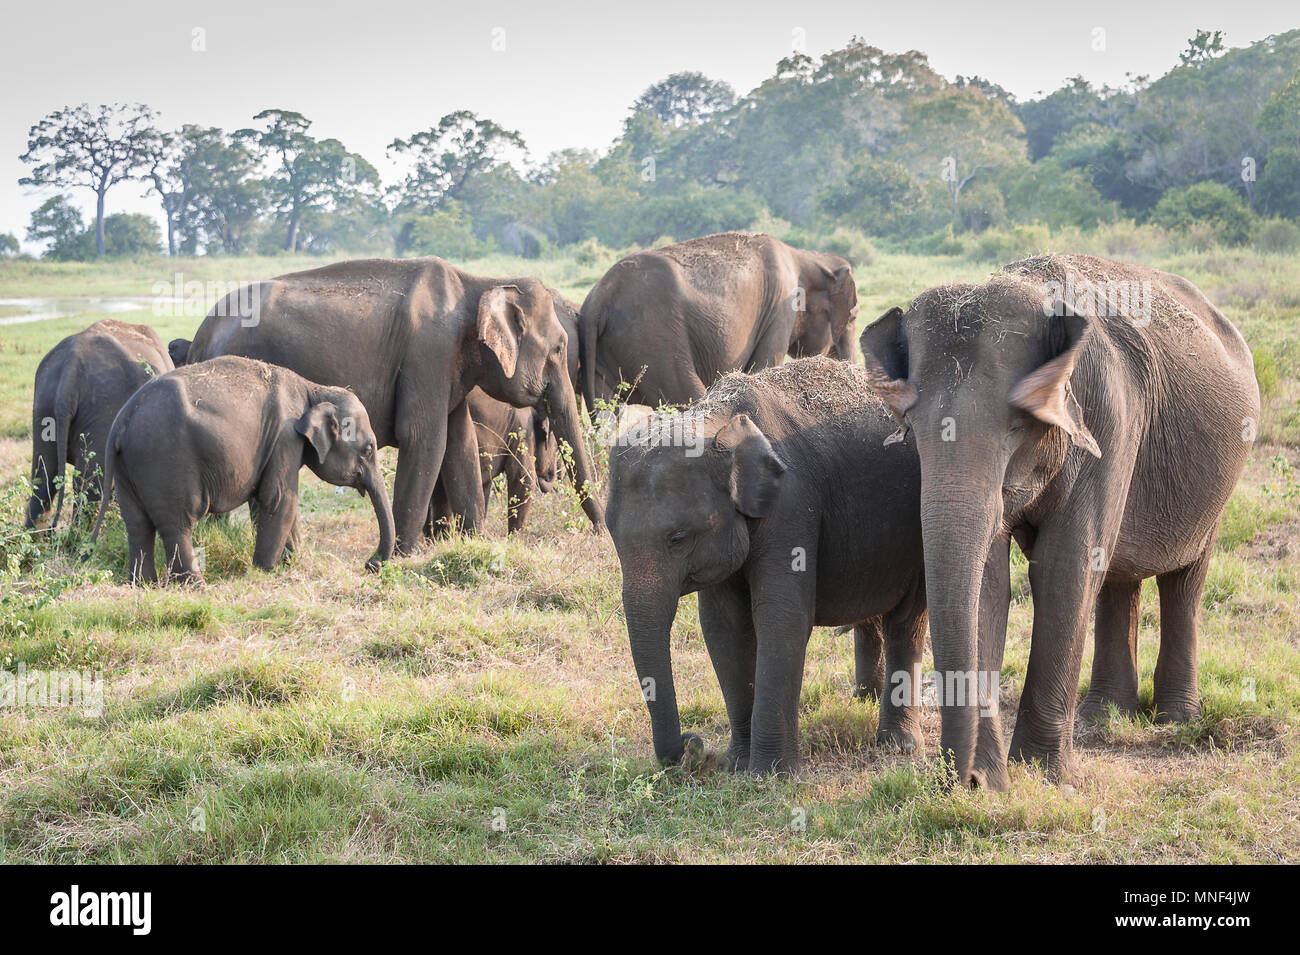 Troupeau d'éléphants indiens (Elephas maximus) paître sur les prairies dans Minerriya, Parc national du Sri Lanka. Coucher du soleil pacifique scène dans un paysage vert Banque D'Images